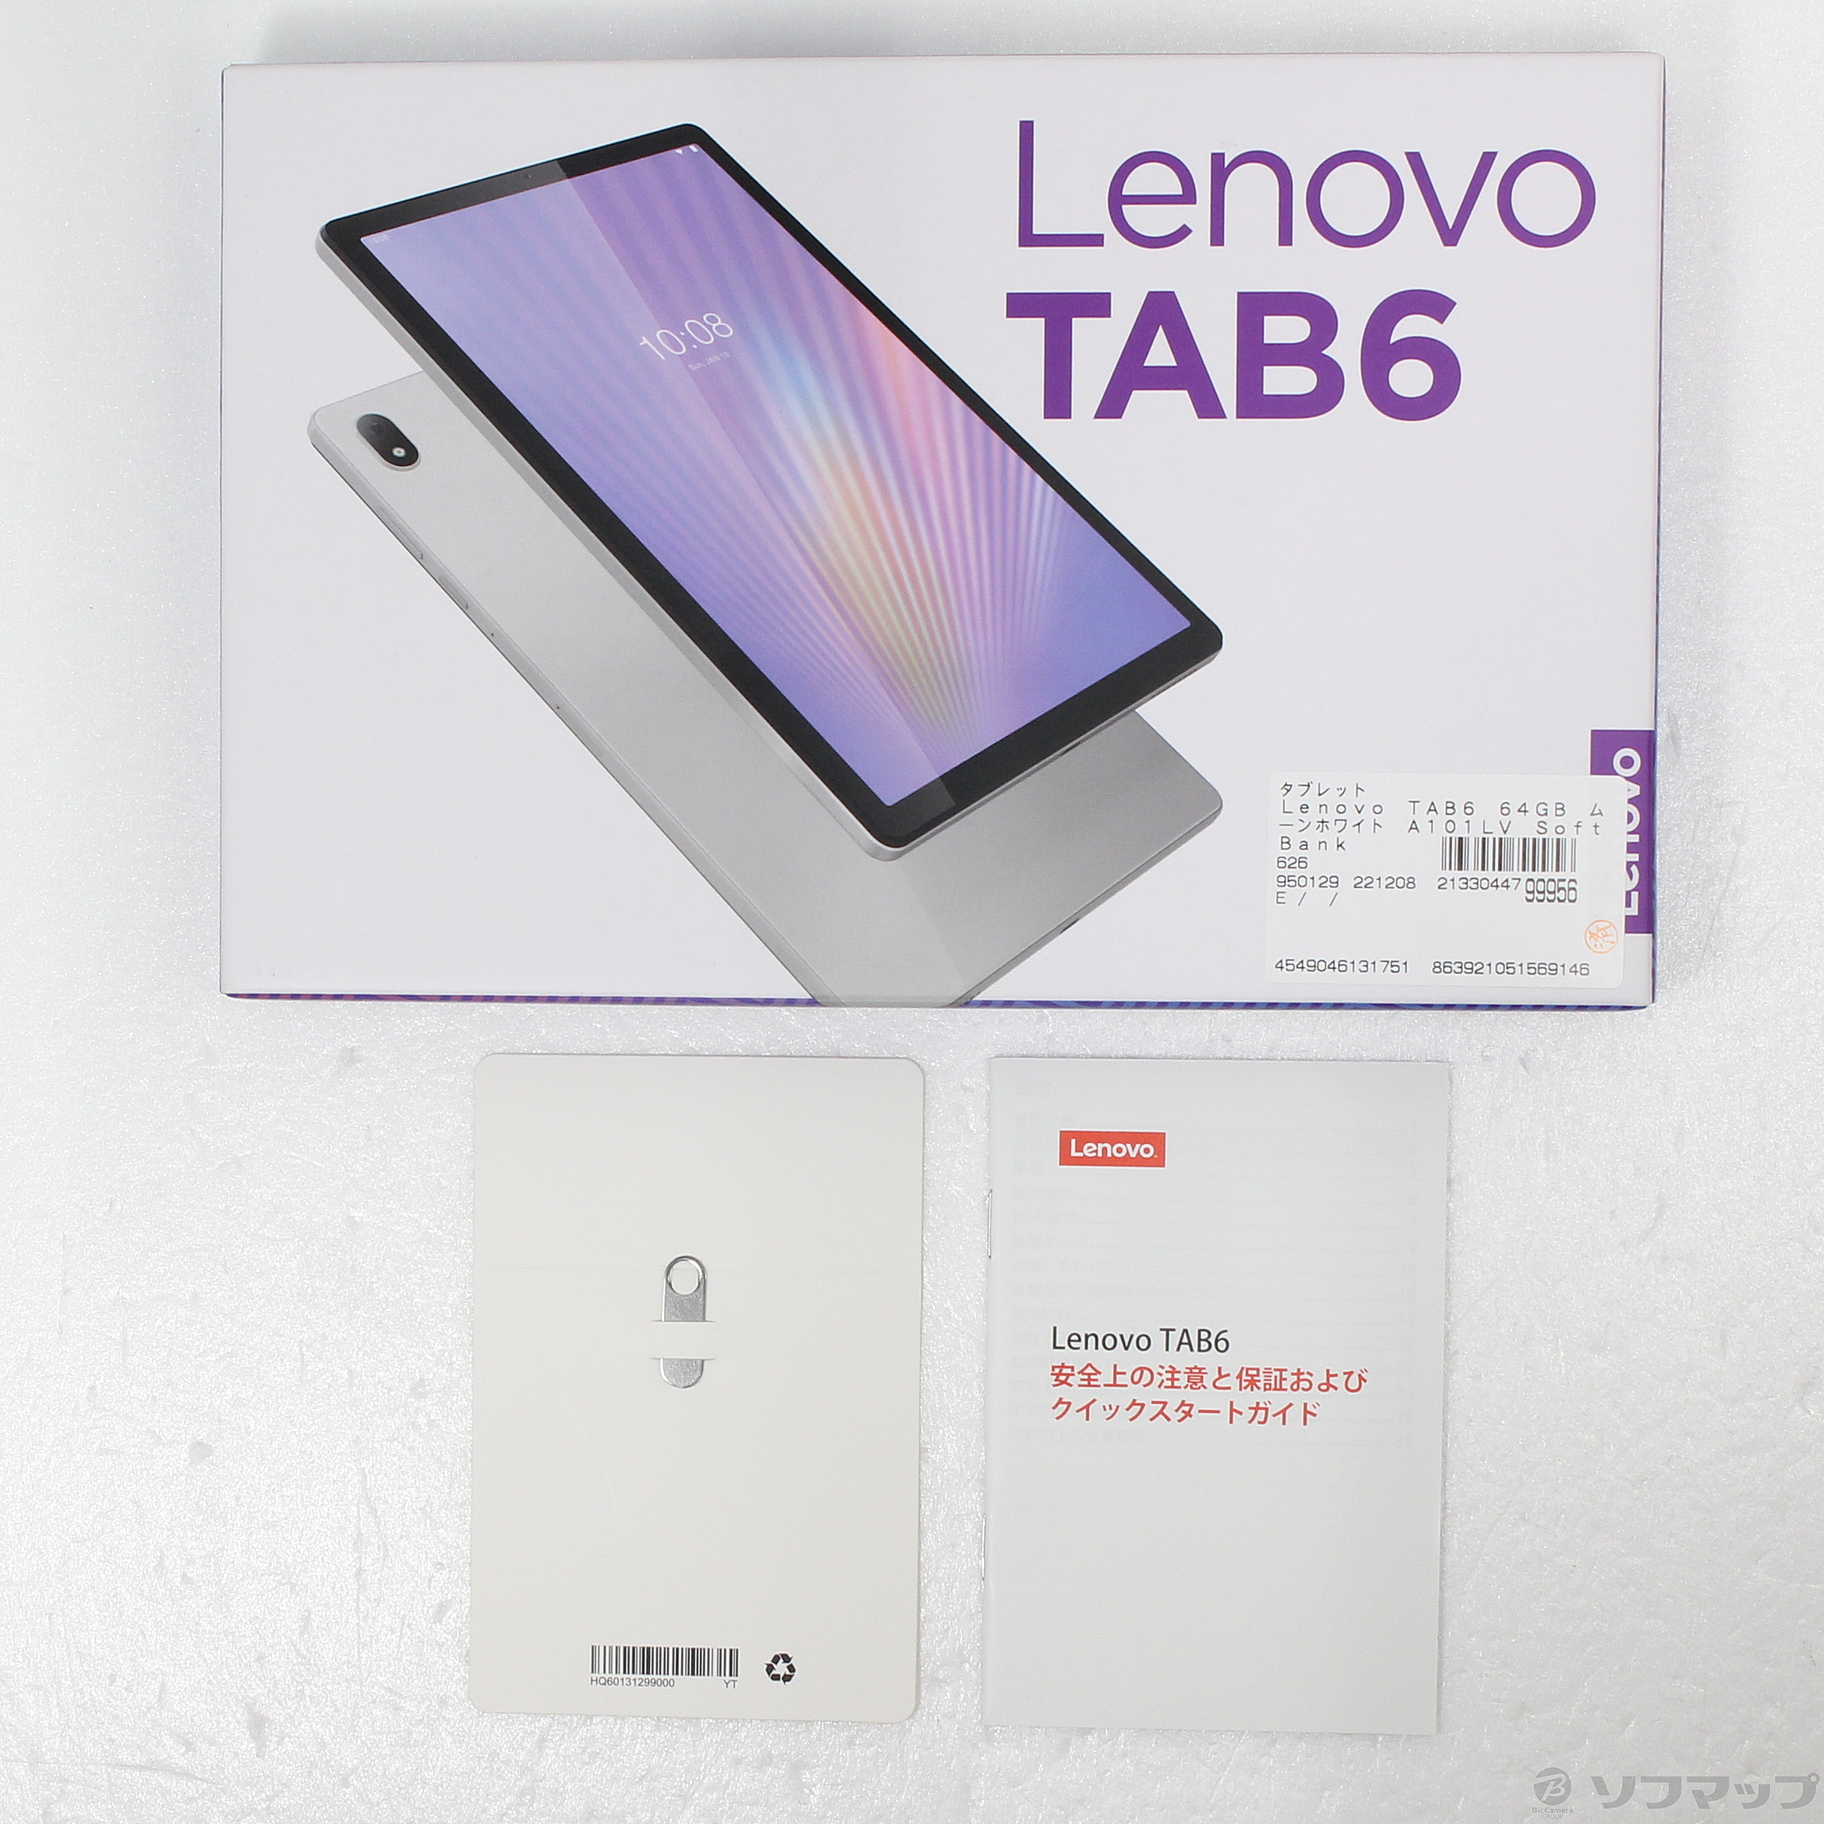 Lenovo tab6 ムーンホワイト 美品